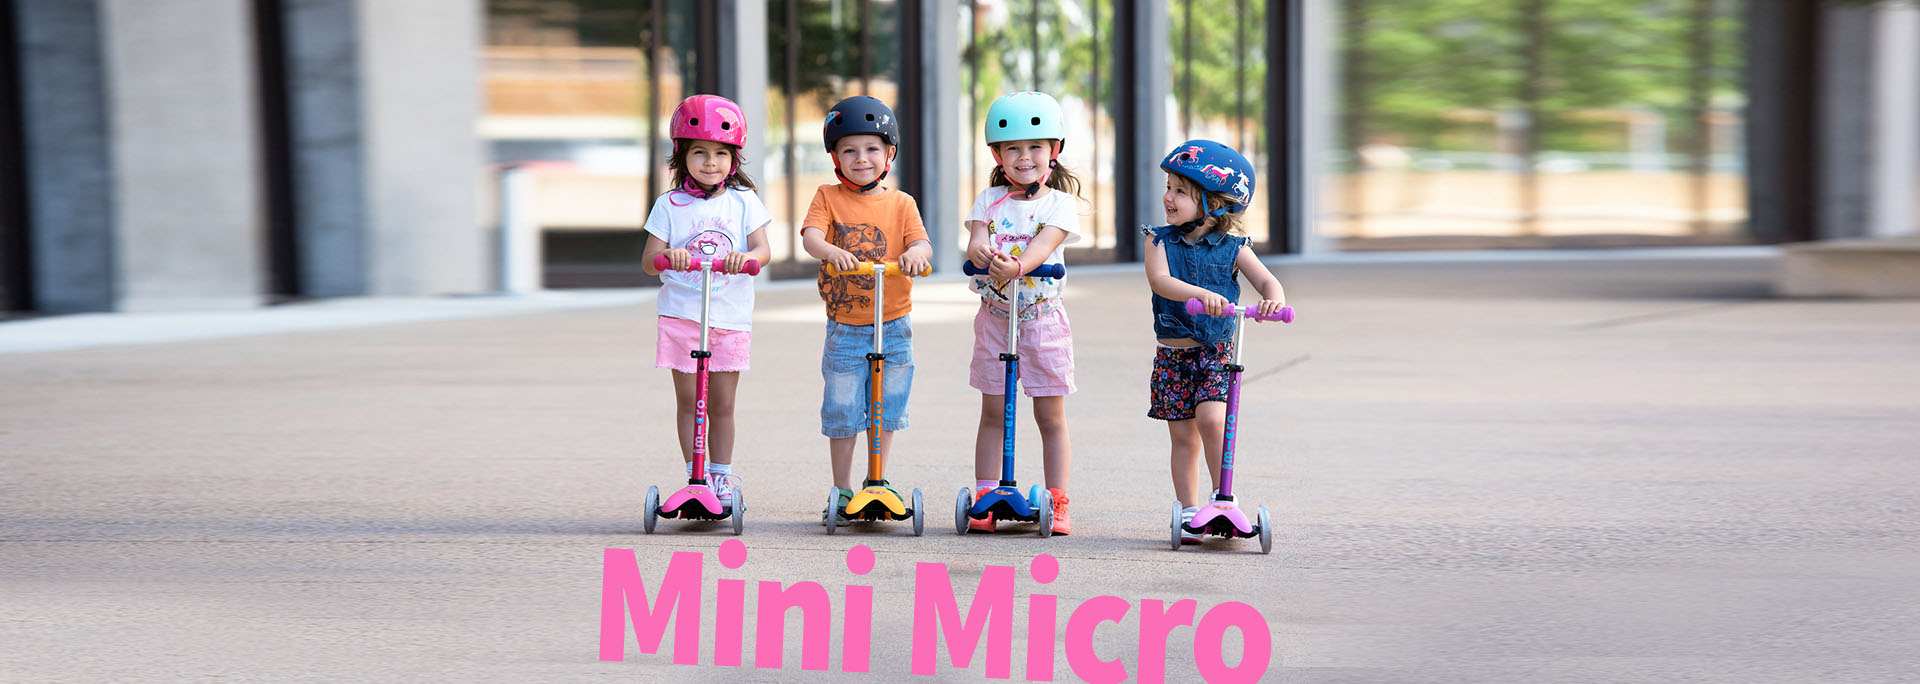 mini micro - מיני מיקרו - קורקינטים 3 גלגלים לילדים | מיקרו ישראל